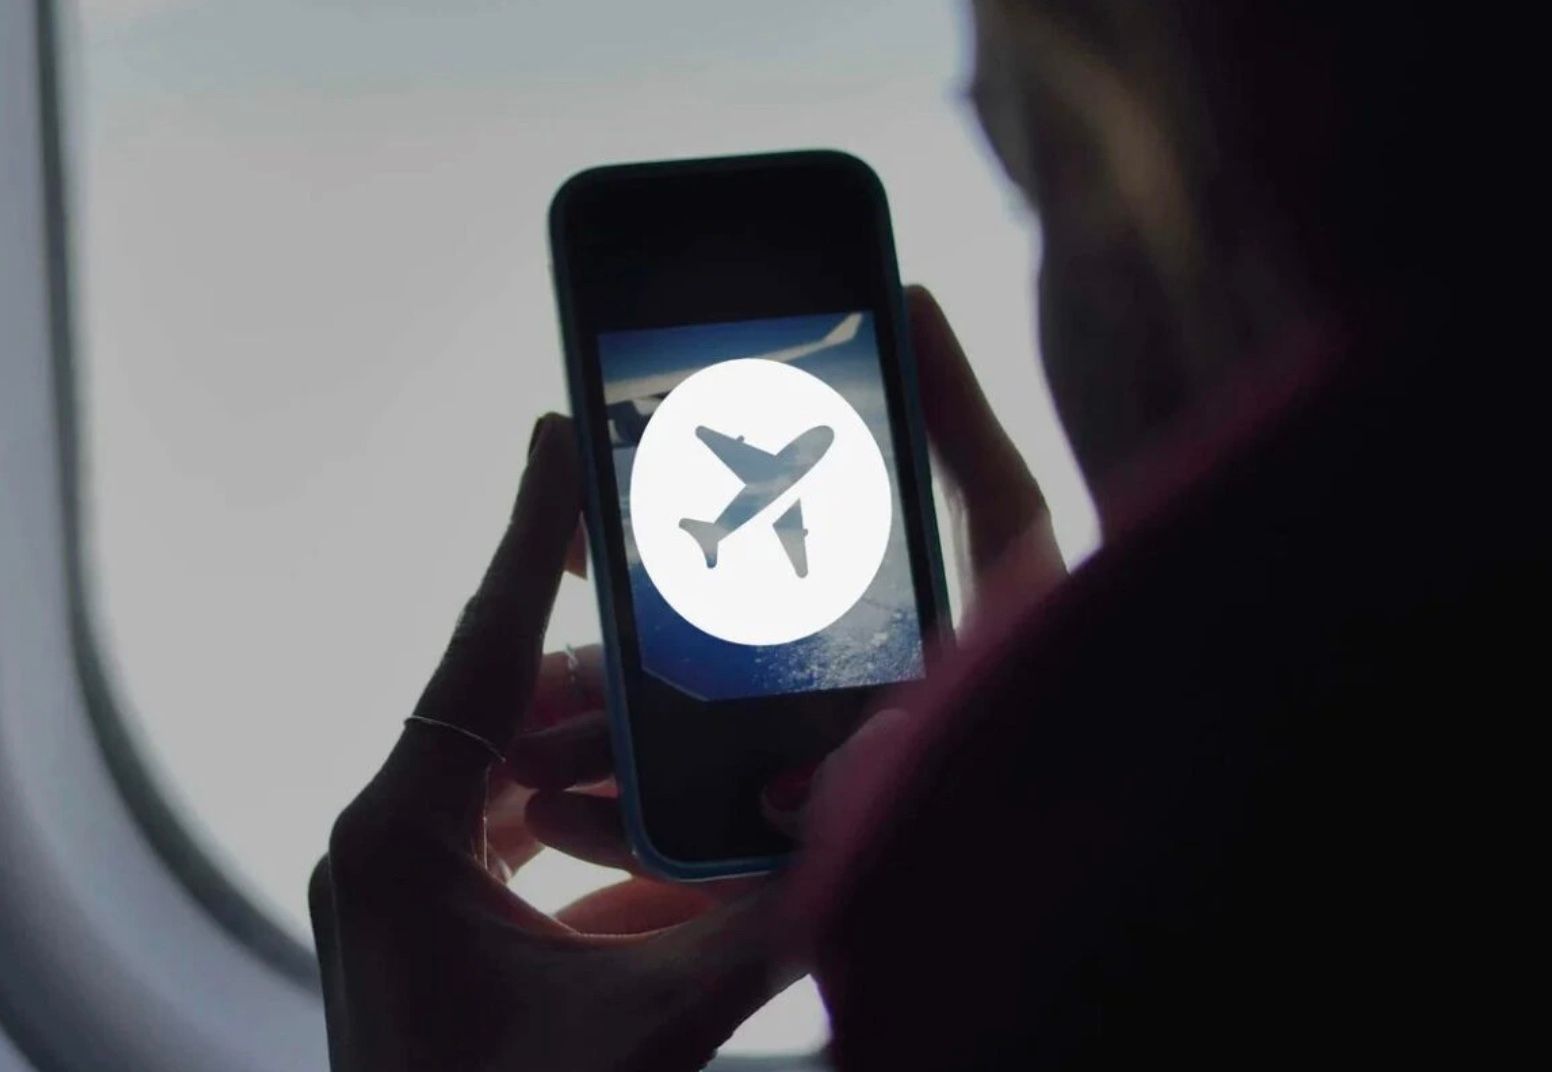 ЄС дозволить авіакомпаніям використовувати технології 5G у літака